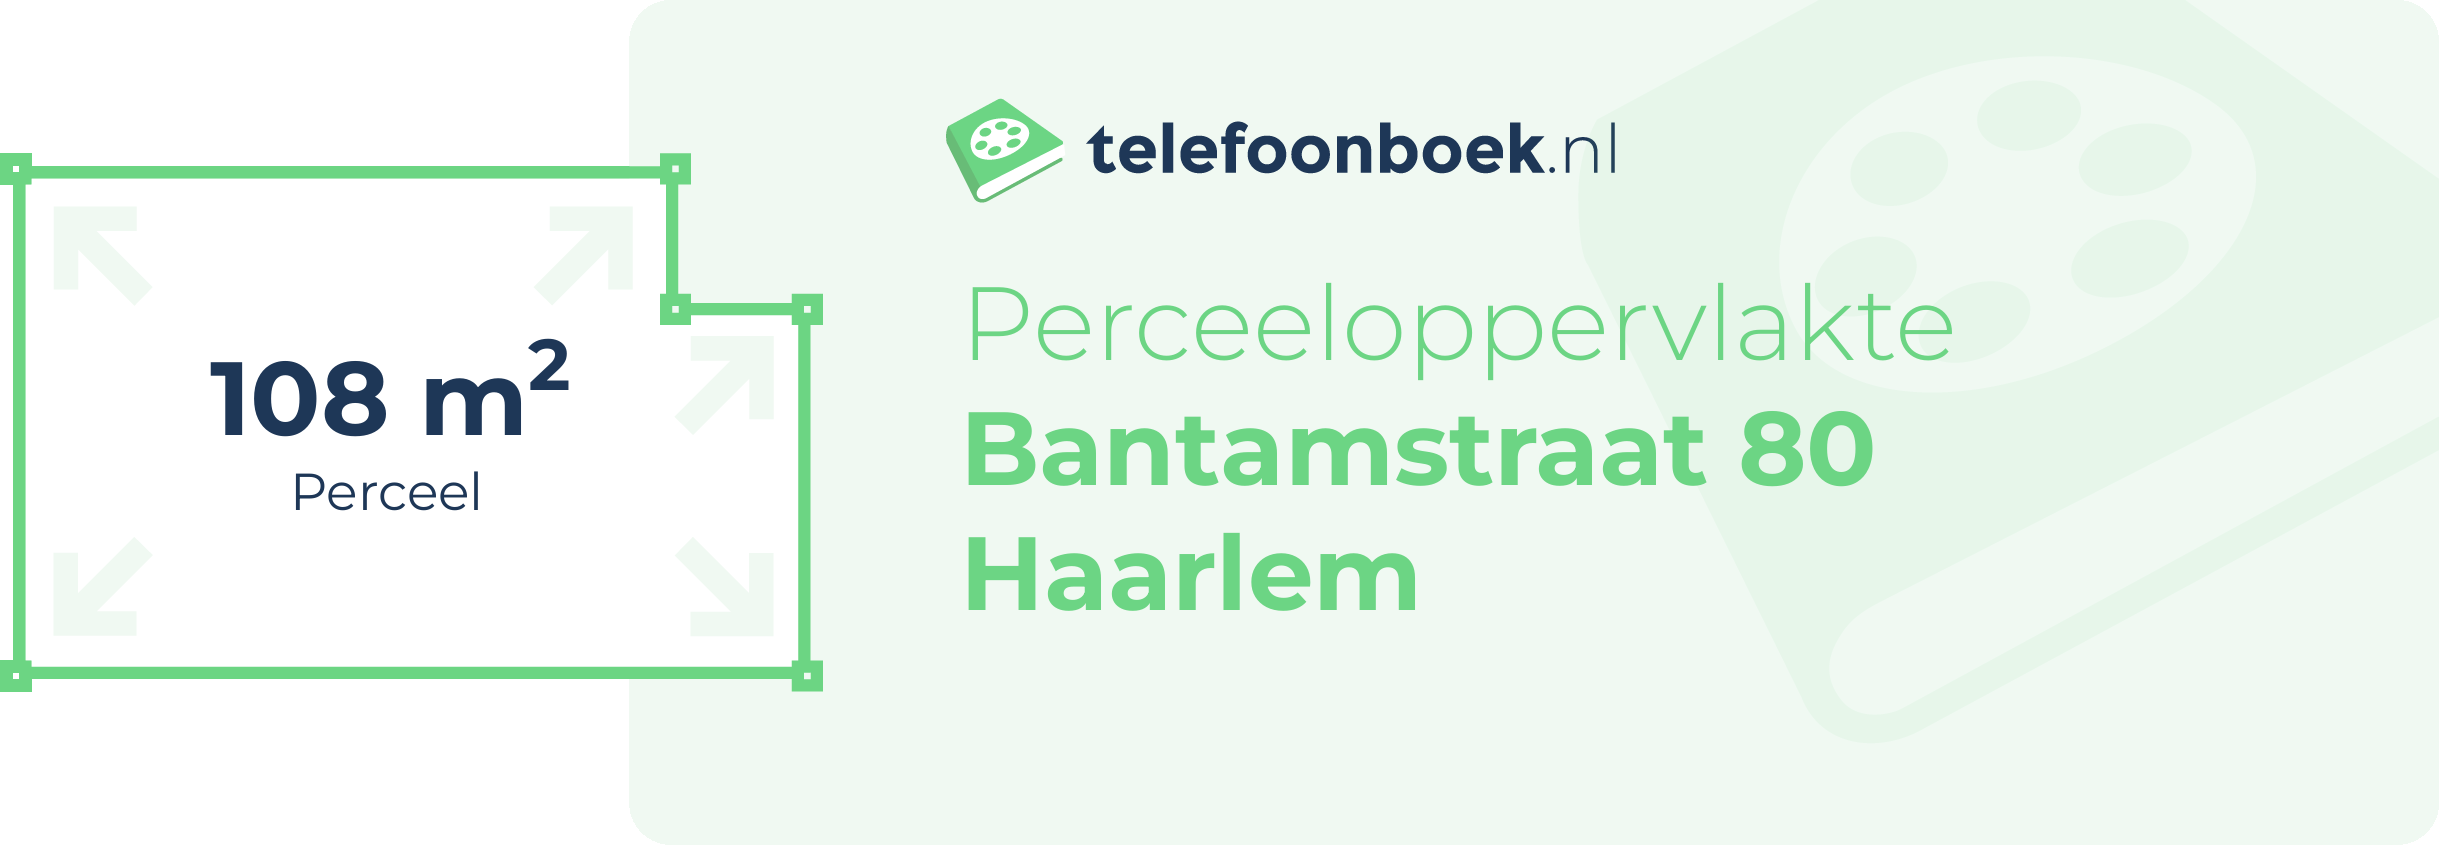 Perceeloppervlakte Bantamstraat 80 Haarlem